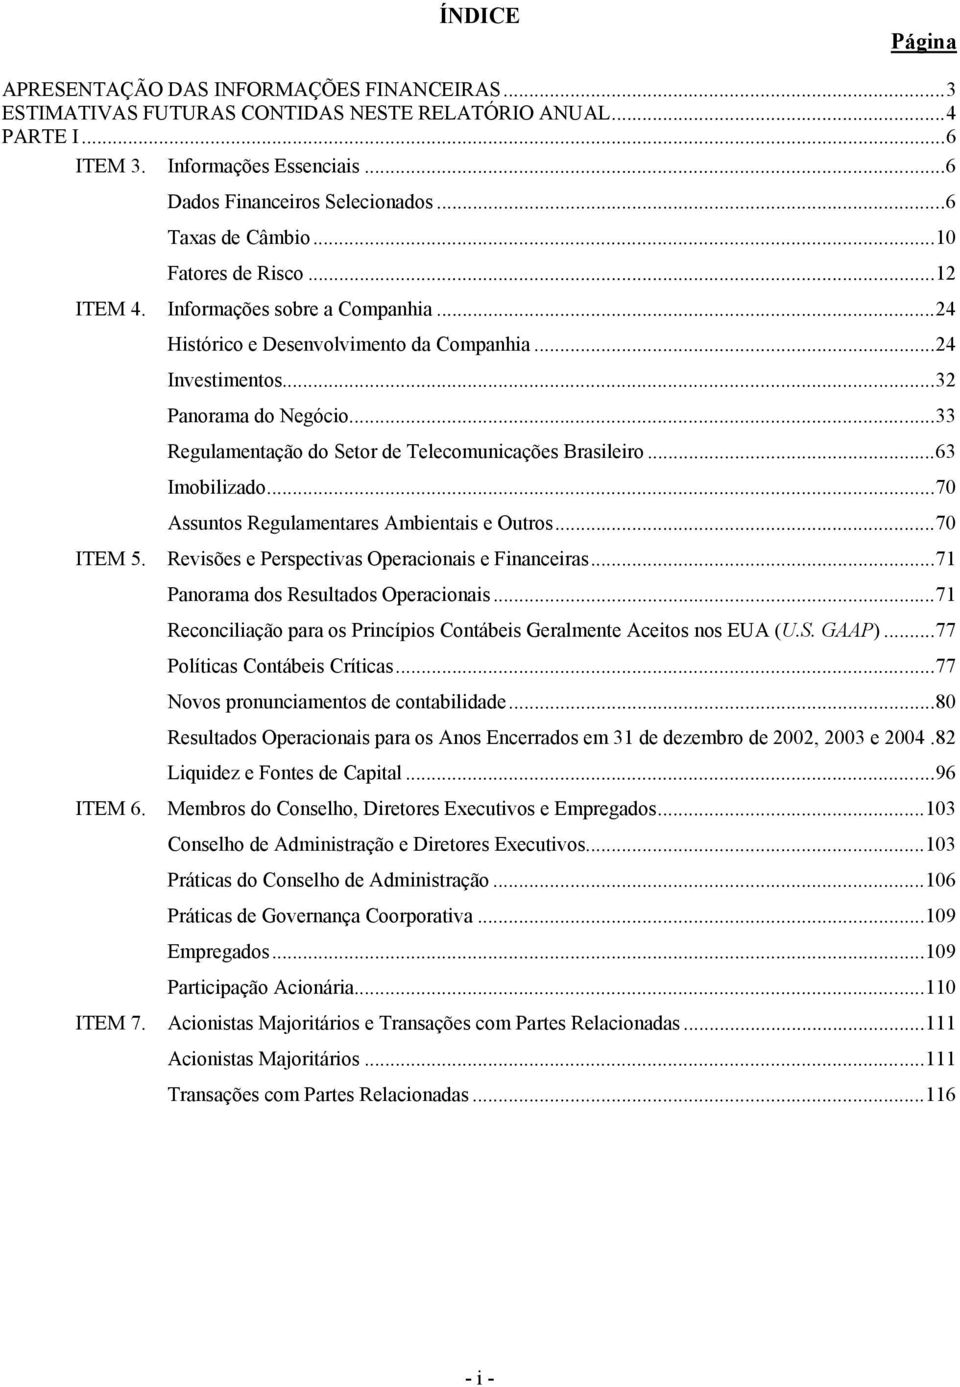 ..33 Regulamentação do Setor de Telecomunicações Brasileiro...63 Imobilizado...70 Assuntos Regulamentares Ambientais e Outros...70 ITEM 5. Revisões e Perspectivas Operacionais e Financeiras.